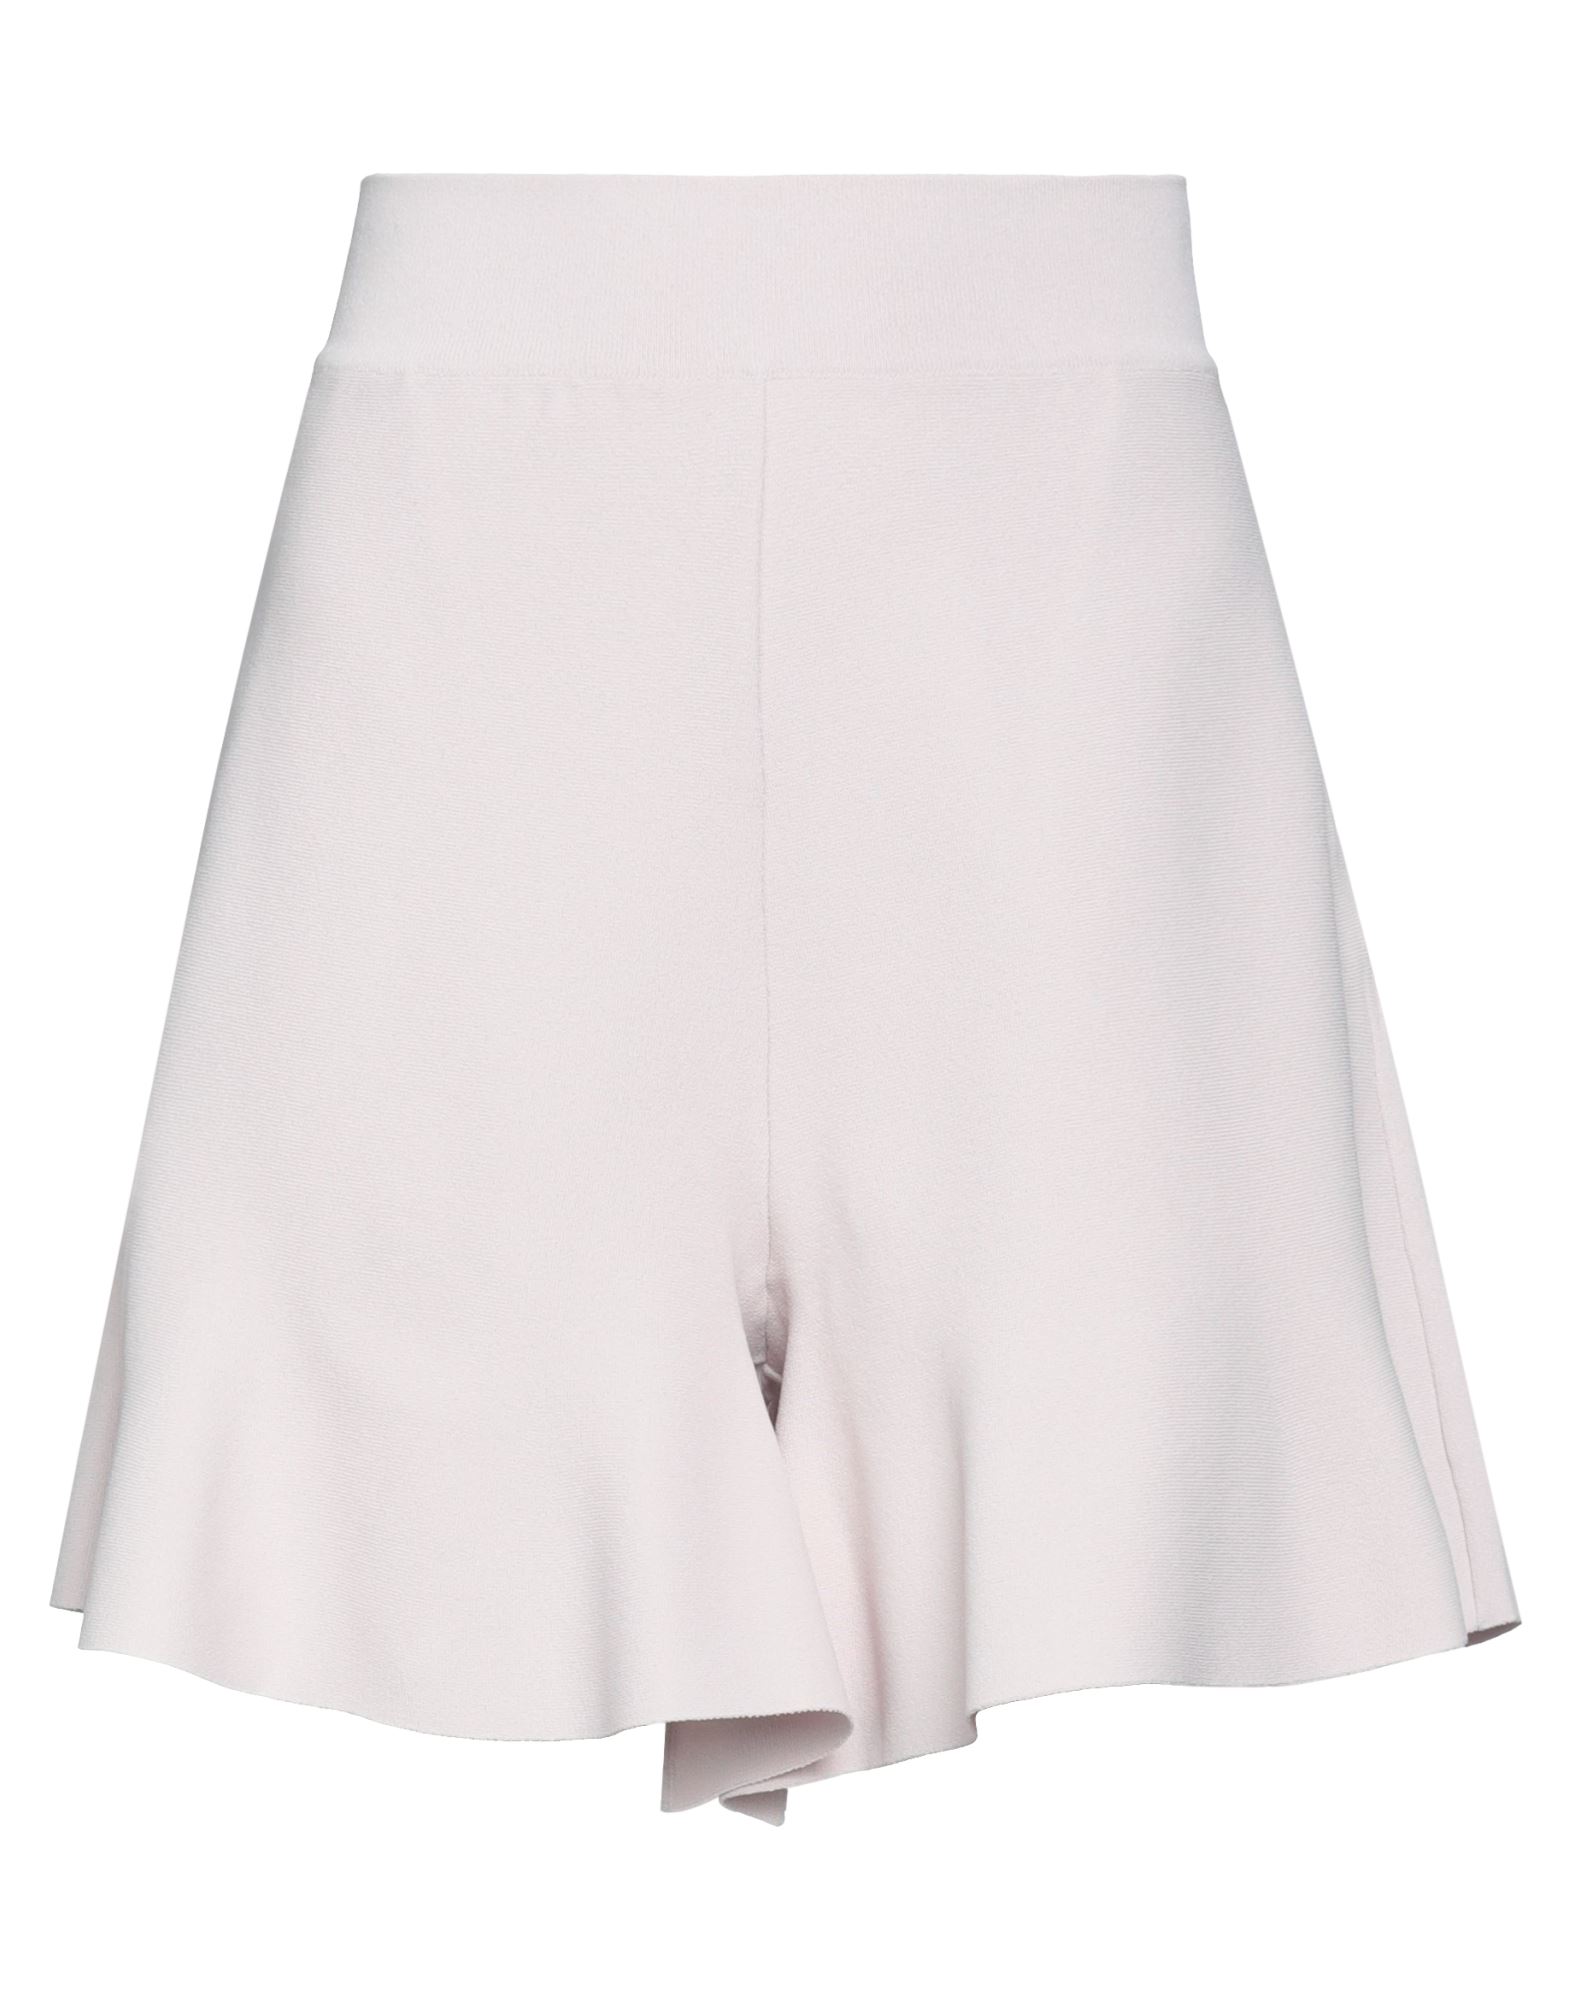 Stella Mccartney Woman Shorts & Bermuda Shorts Light Pink Size 6-8 Viscose, Polyester